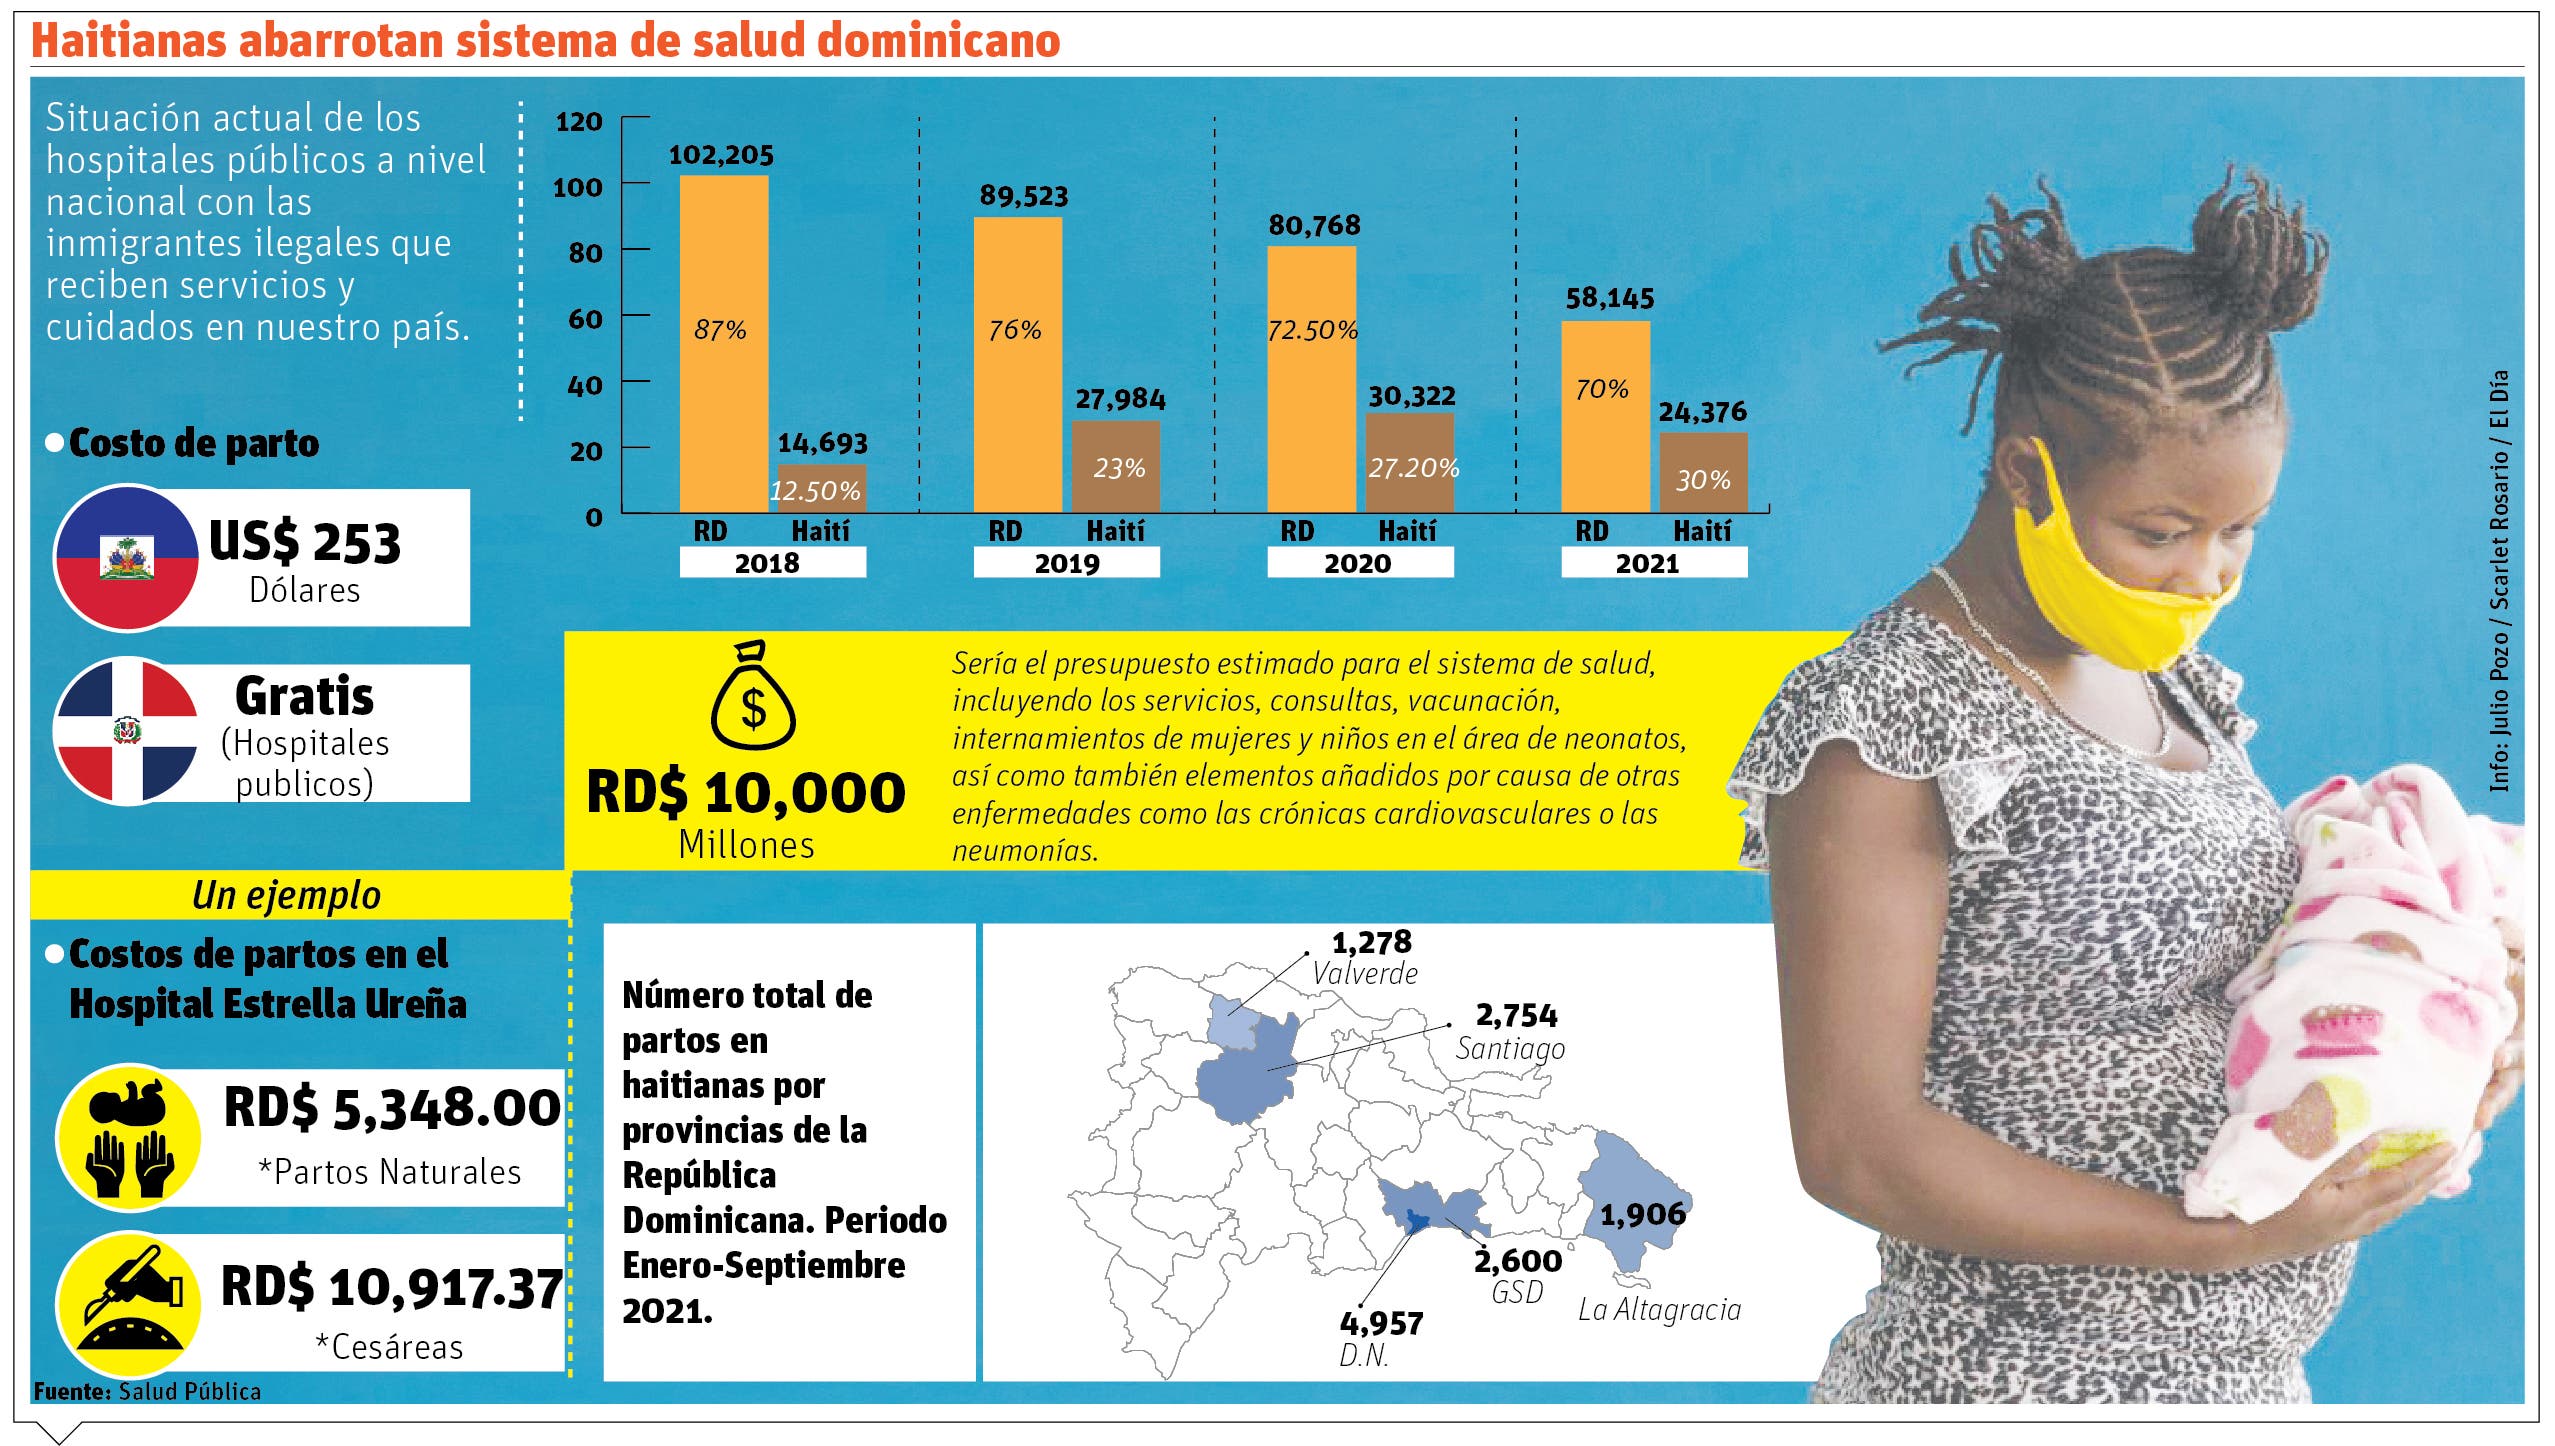 La República Dominicana registra 88 partos de haitianas cada día